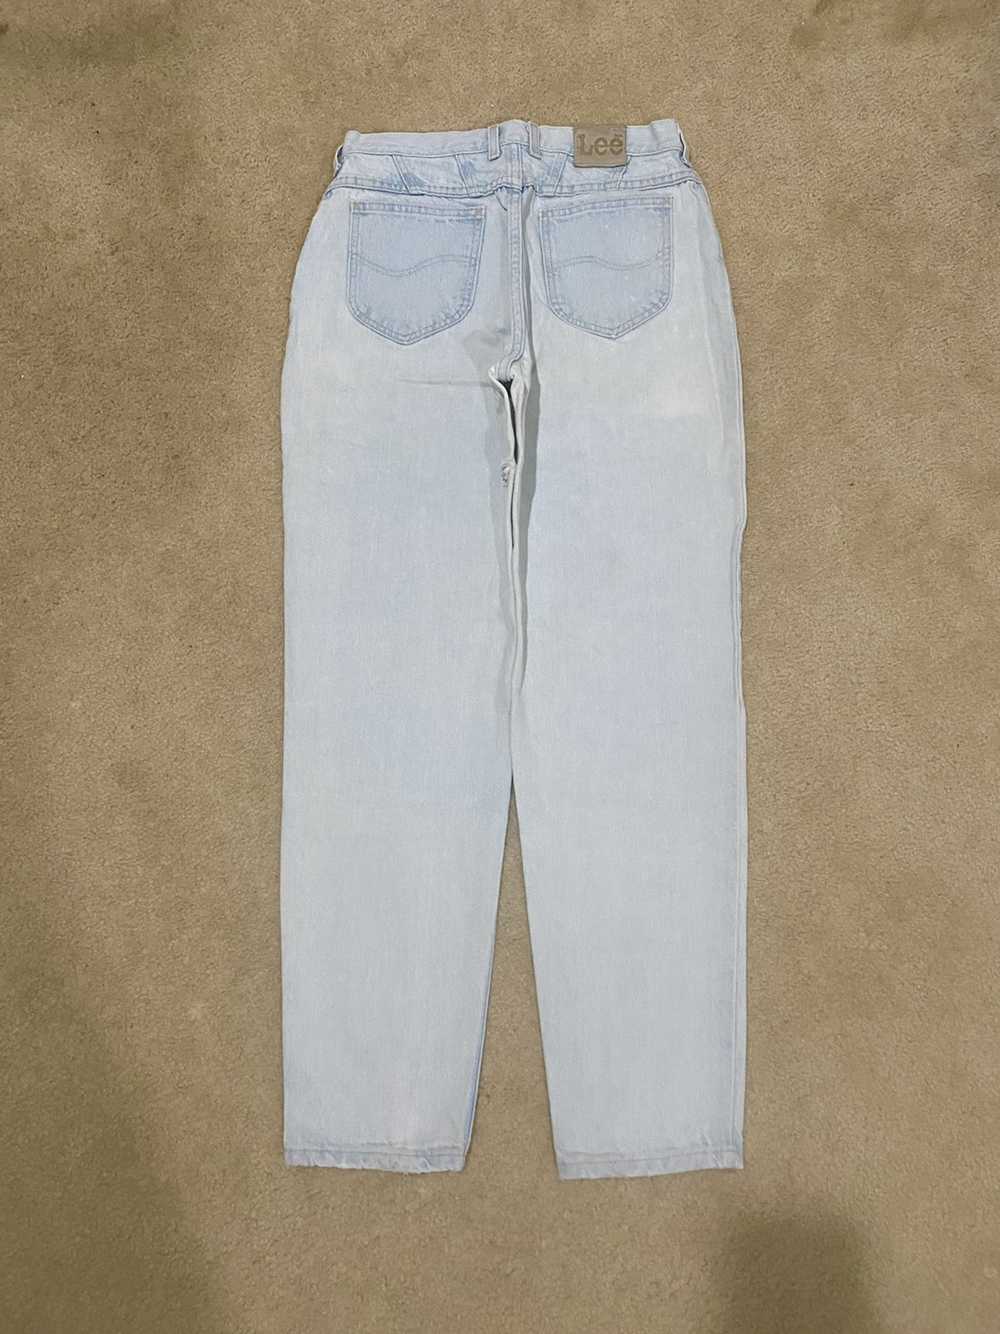 Lee × Vintage Vintage Lightwash Lee Denim Jeans - image 2